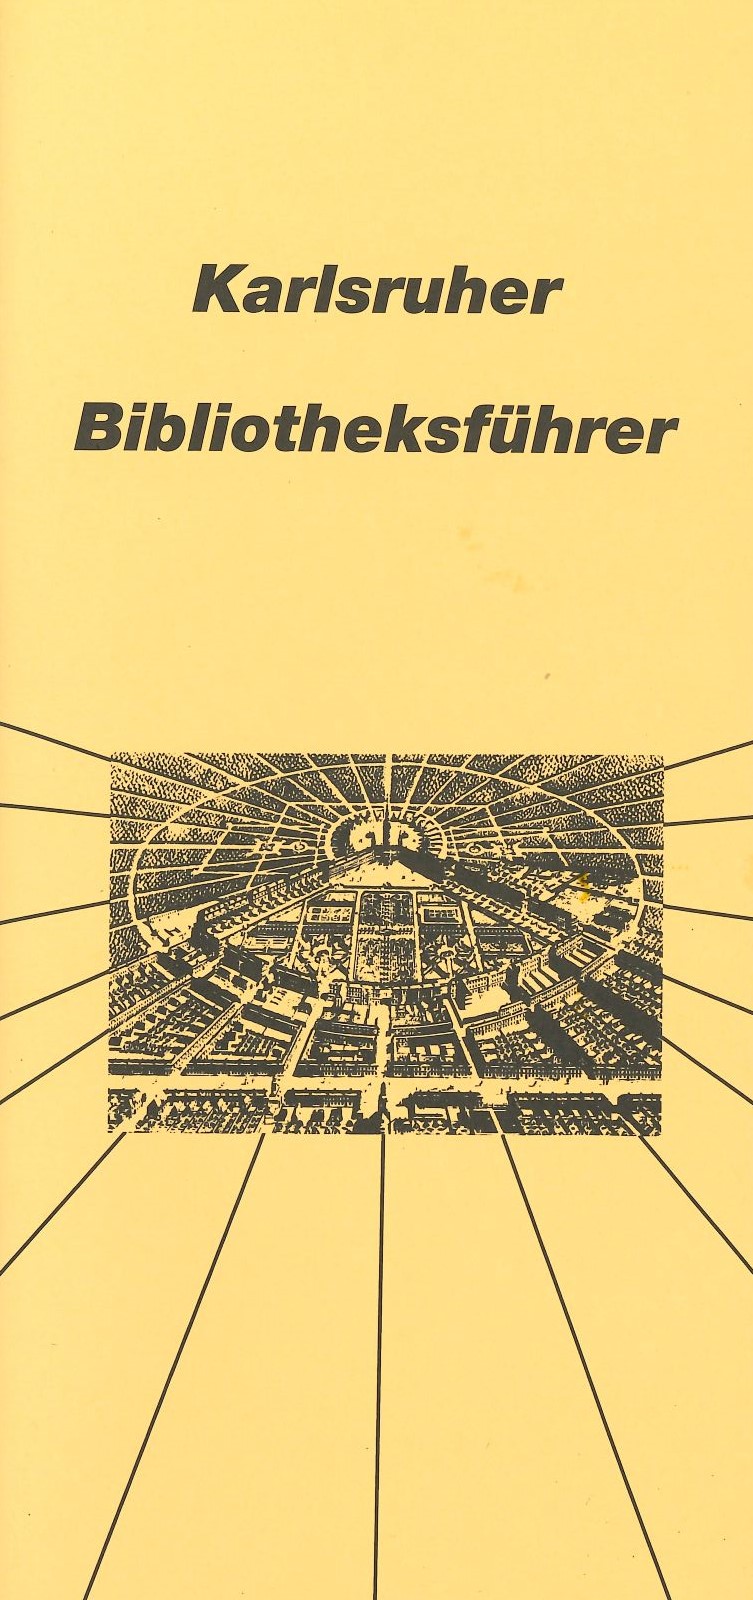 Karlsruher Bibliotheksführer auf gelben Papier, abgebildet ist das Schloss mit dem Zirkel, die Strahlen ziehen sich auf dem gelben Papier weiter..